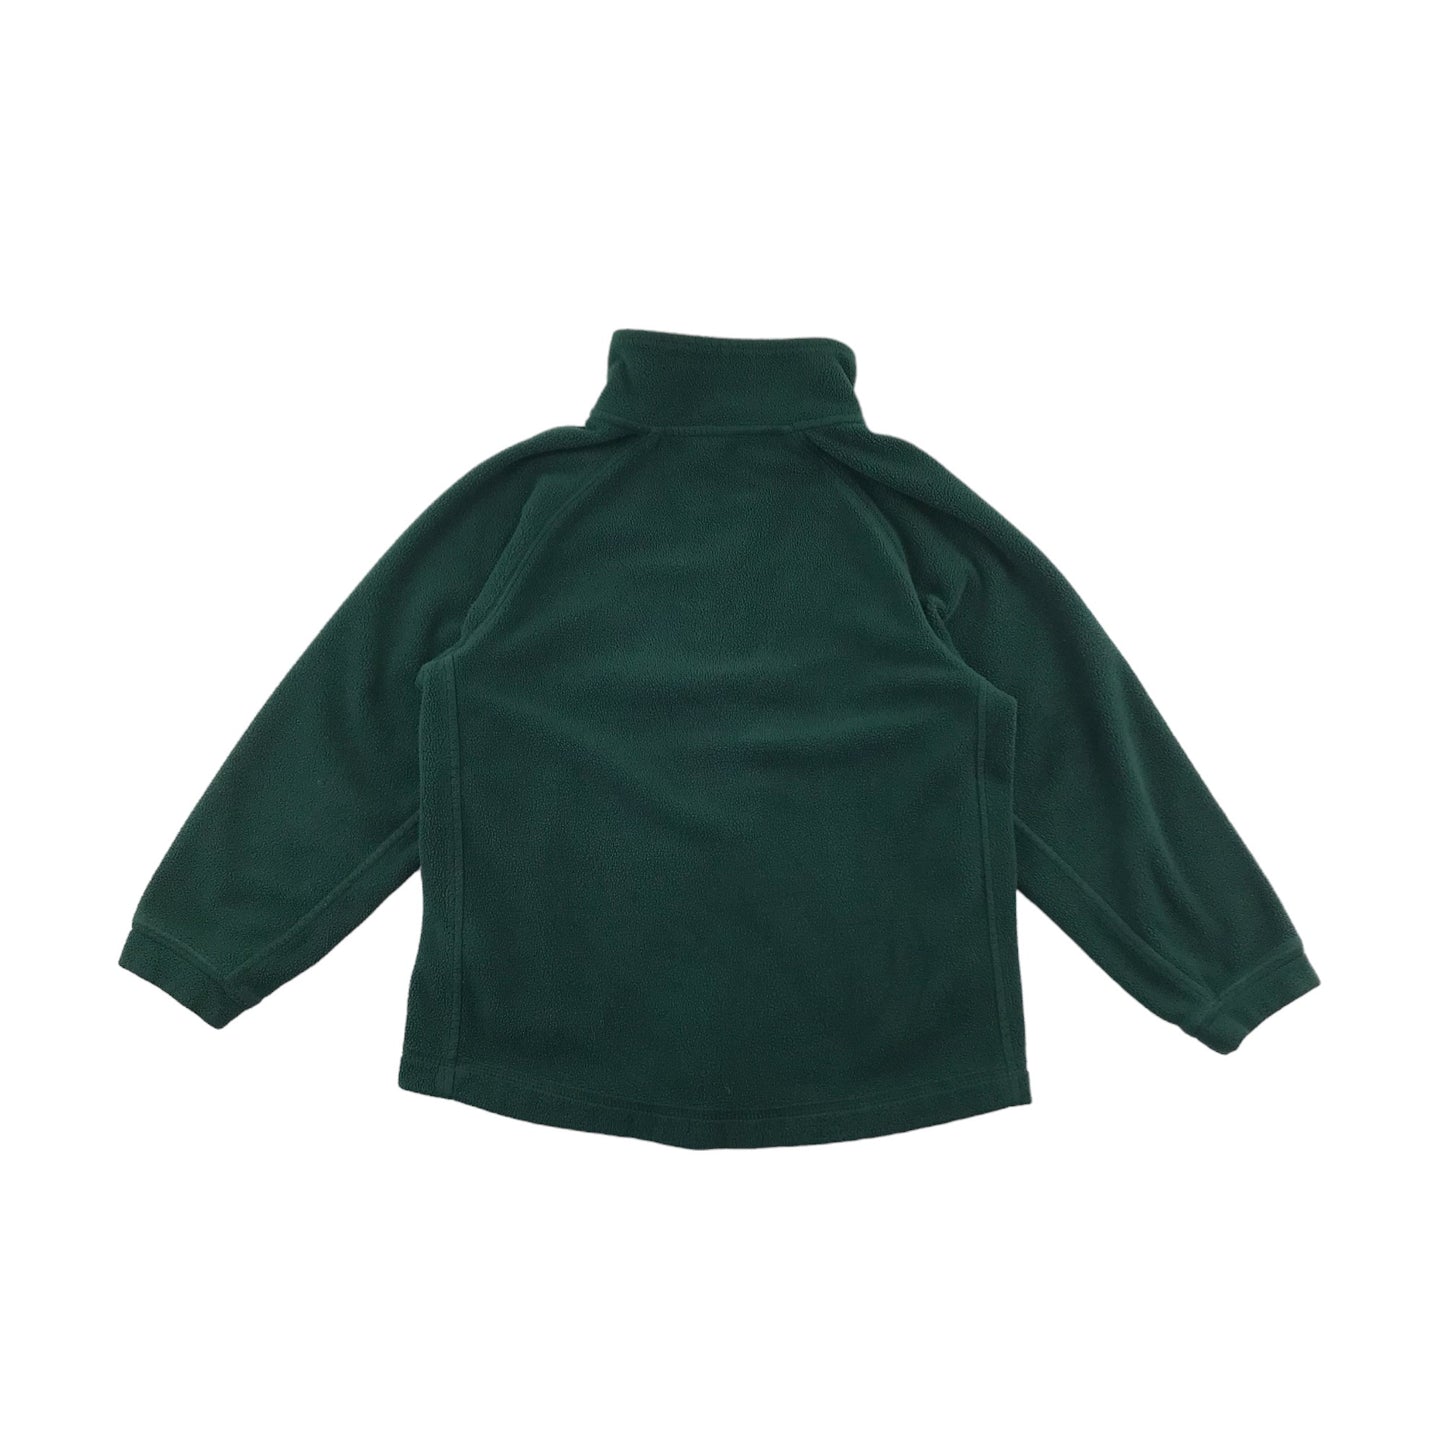 Green School Fleece With Zipper